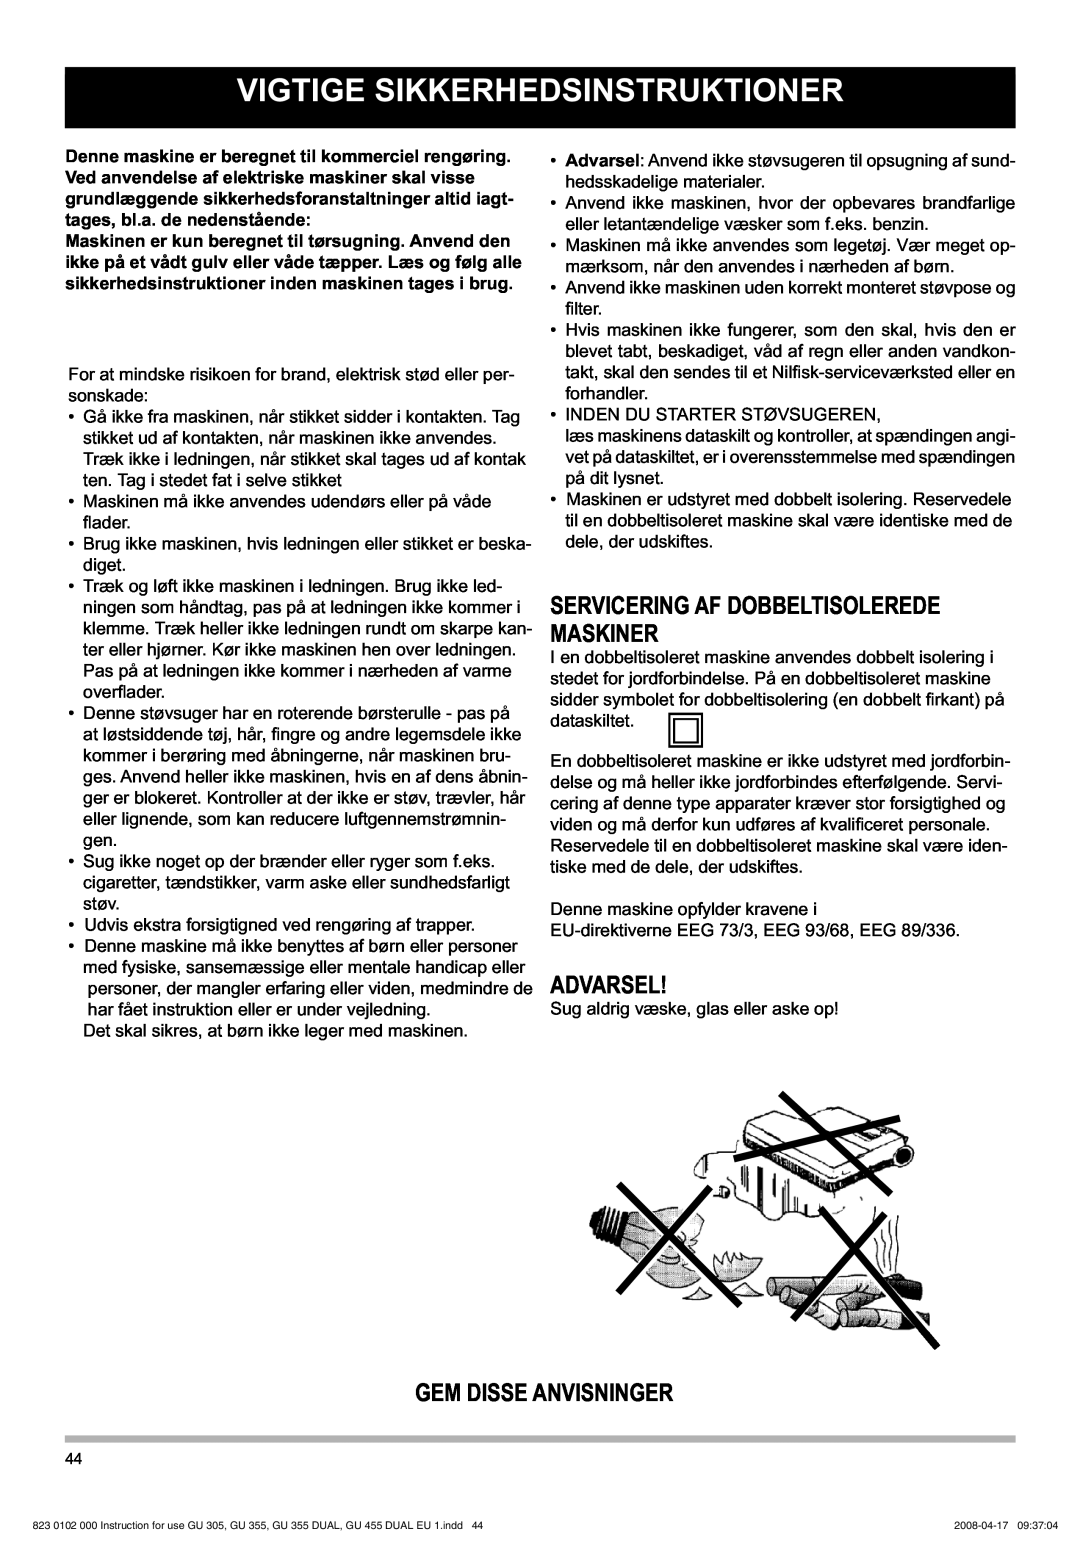 Nilfisk-Advance America GU 12 DMU Vigtige Sikkerhedsinstruktioner, Servicering Af Dobbeltisolerede Maskiner, Advarsel 